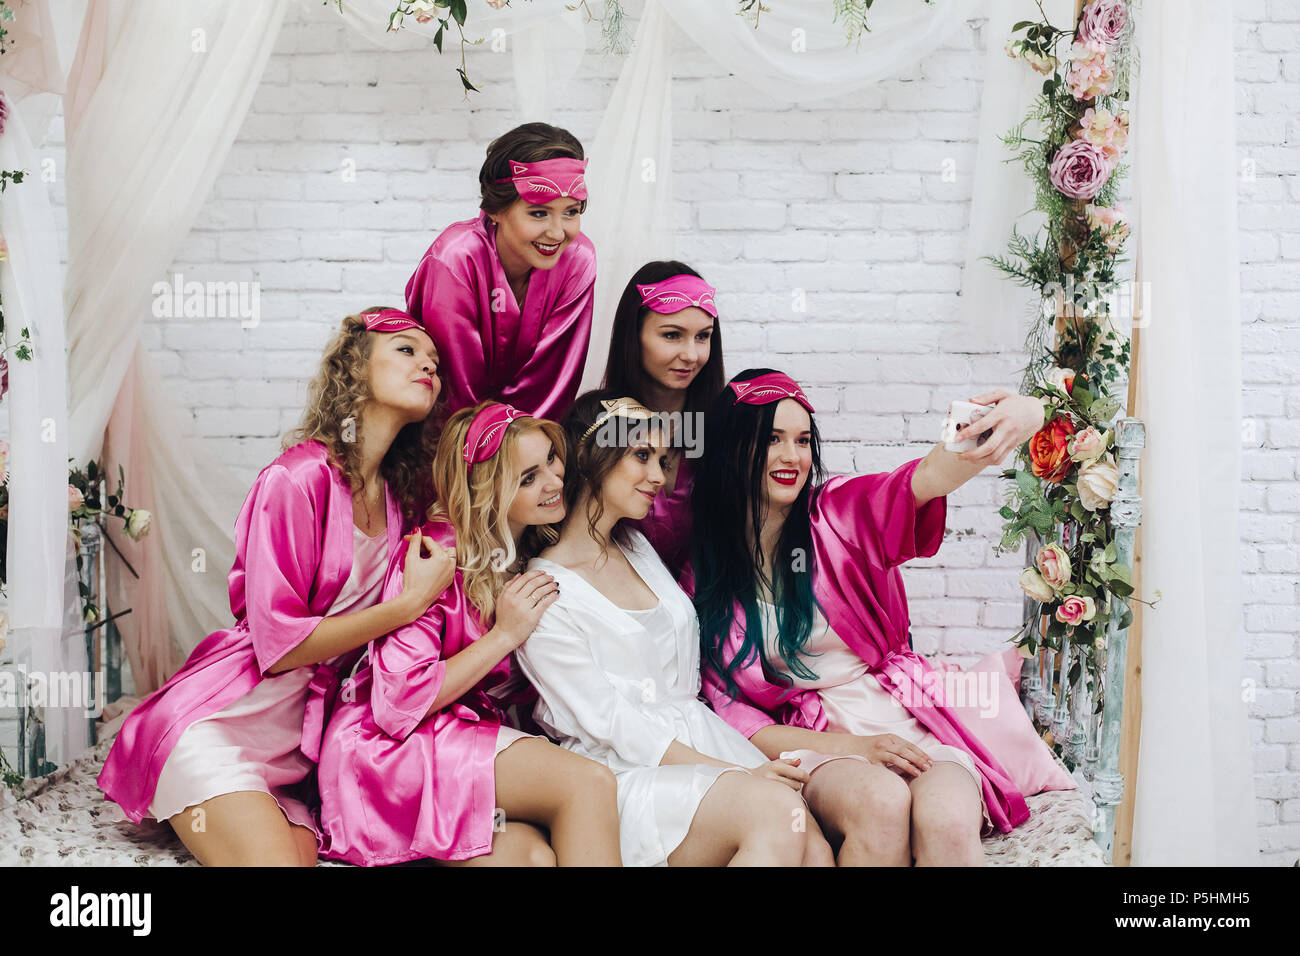 Hübschen Brautjungfern mit Braut unter selfie am Polterabend  Stockfotografie - Alamy